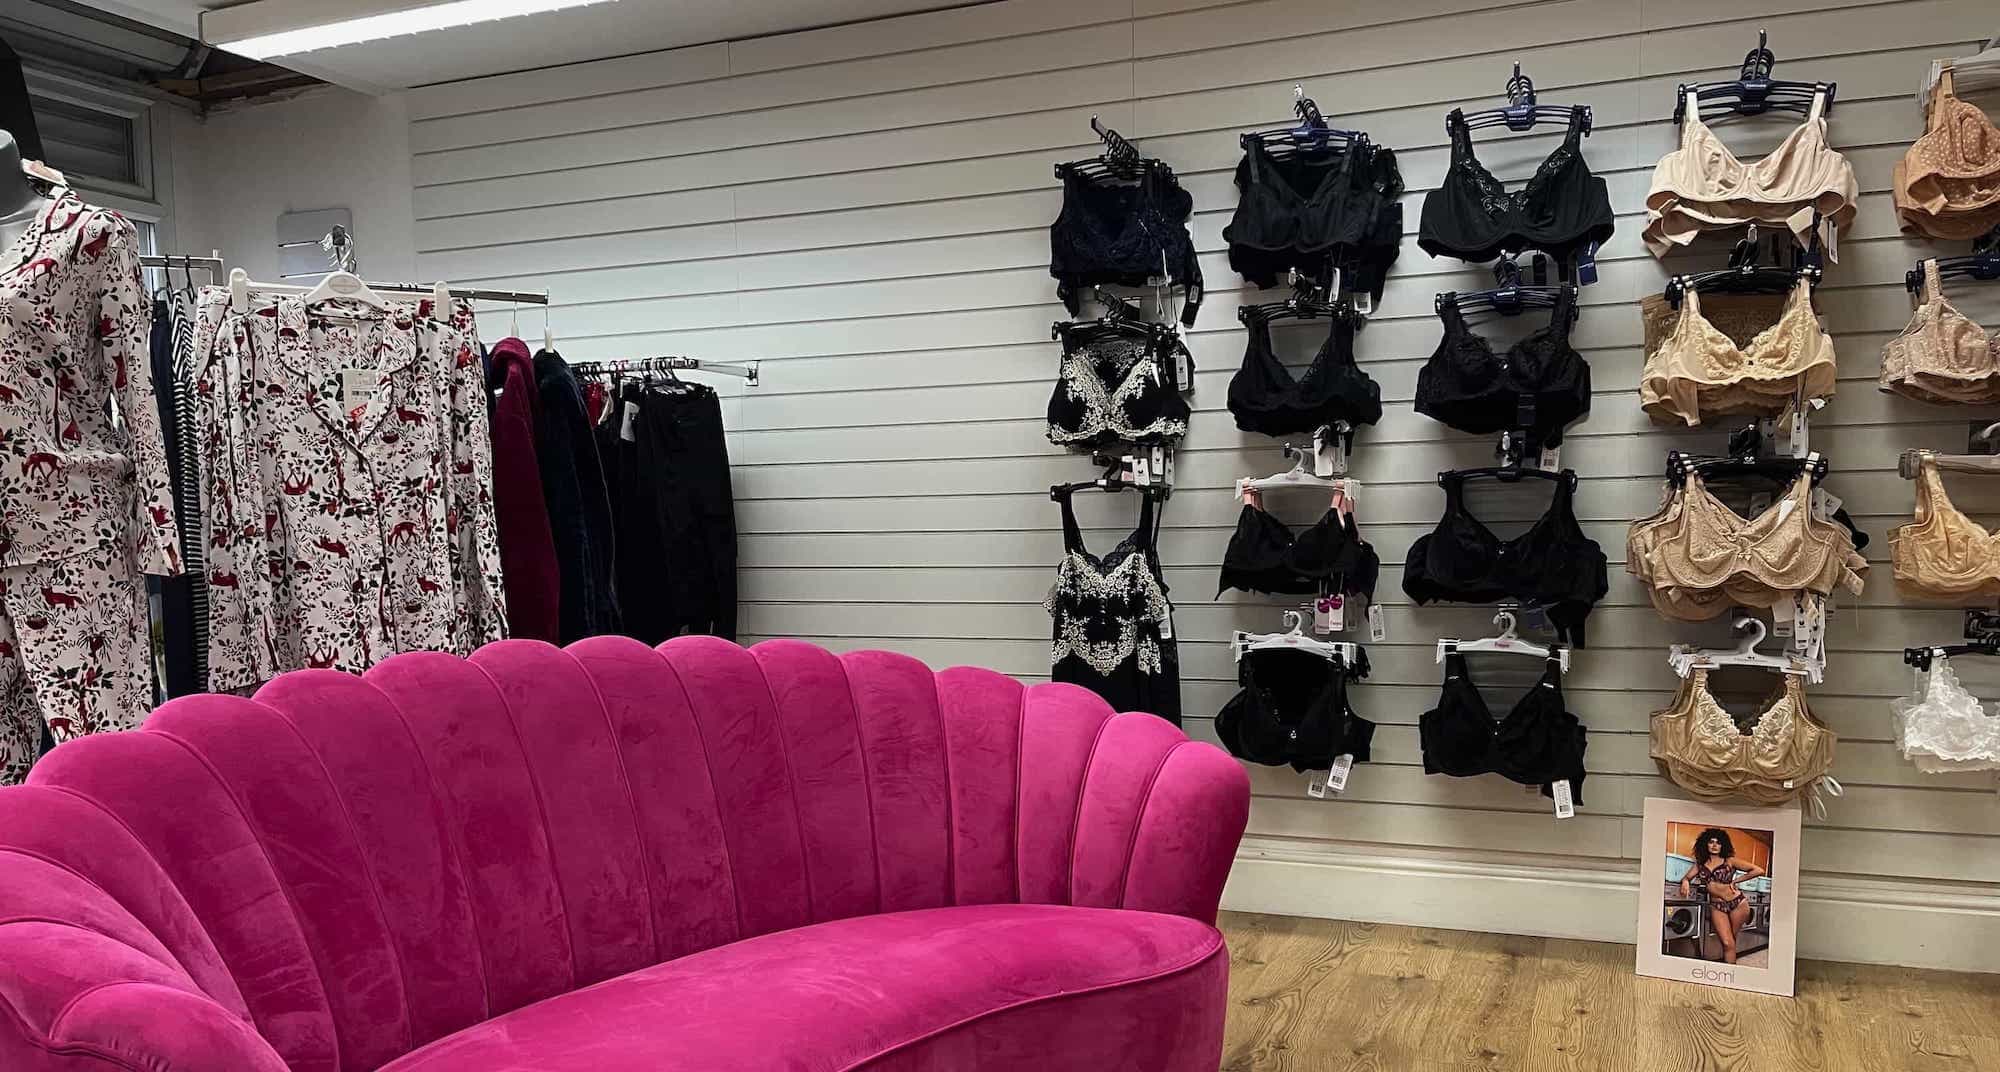 http://prettywomanbras.co.uk/cdn/shop/files/Pretty-Woman-Bras-Shopfront-Pink-Chair-Bras-social.jpg?v=1643817928